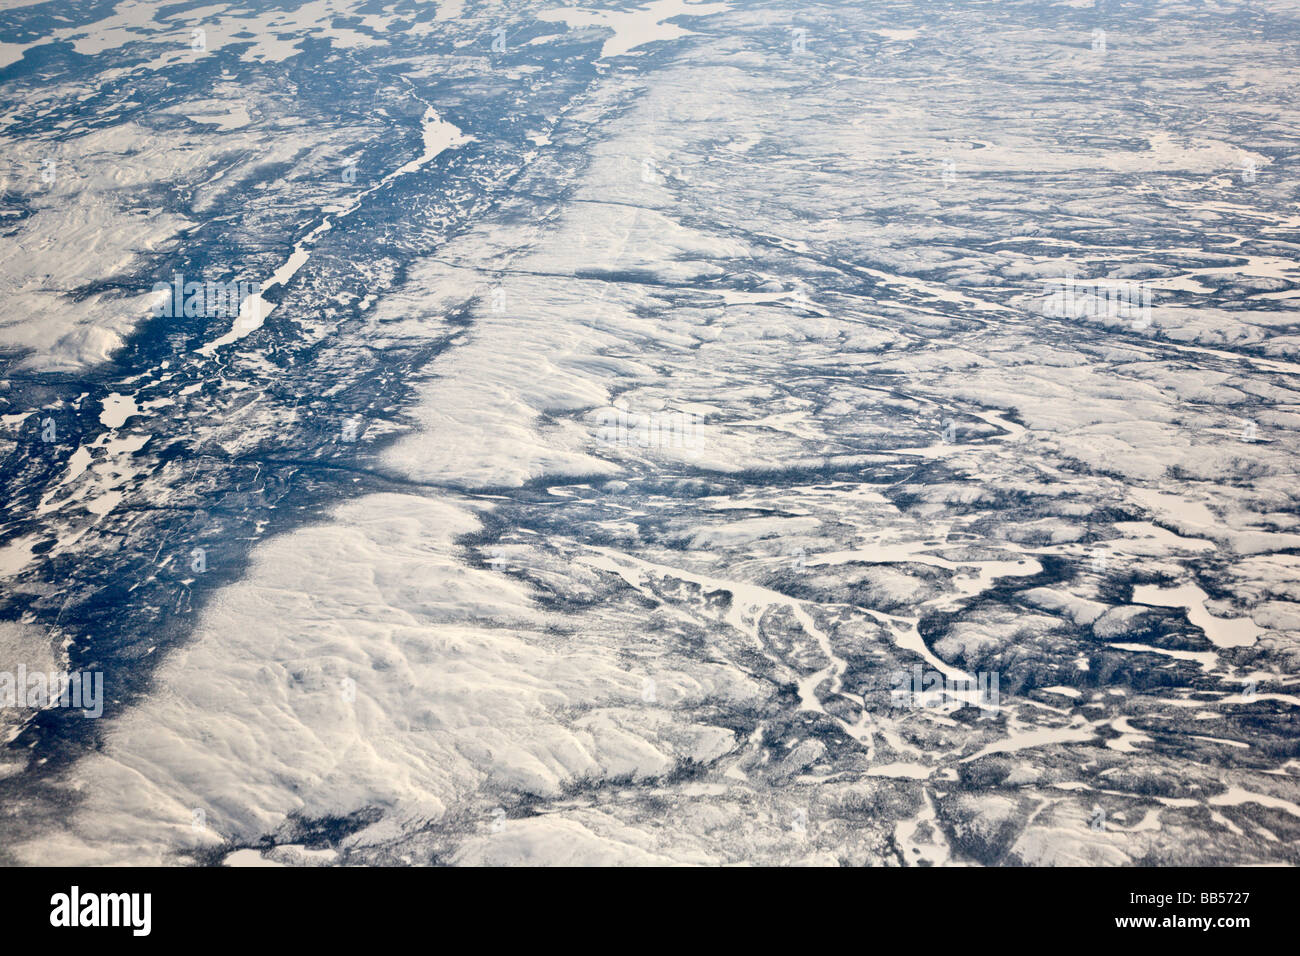 La awe-inspiring ghiaccio polare cappuccio può essere visto in questa vista da un piano, il viaggio da Francoforte, in Germania, a Washington DC. Foto Stock